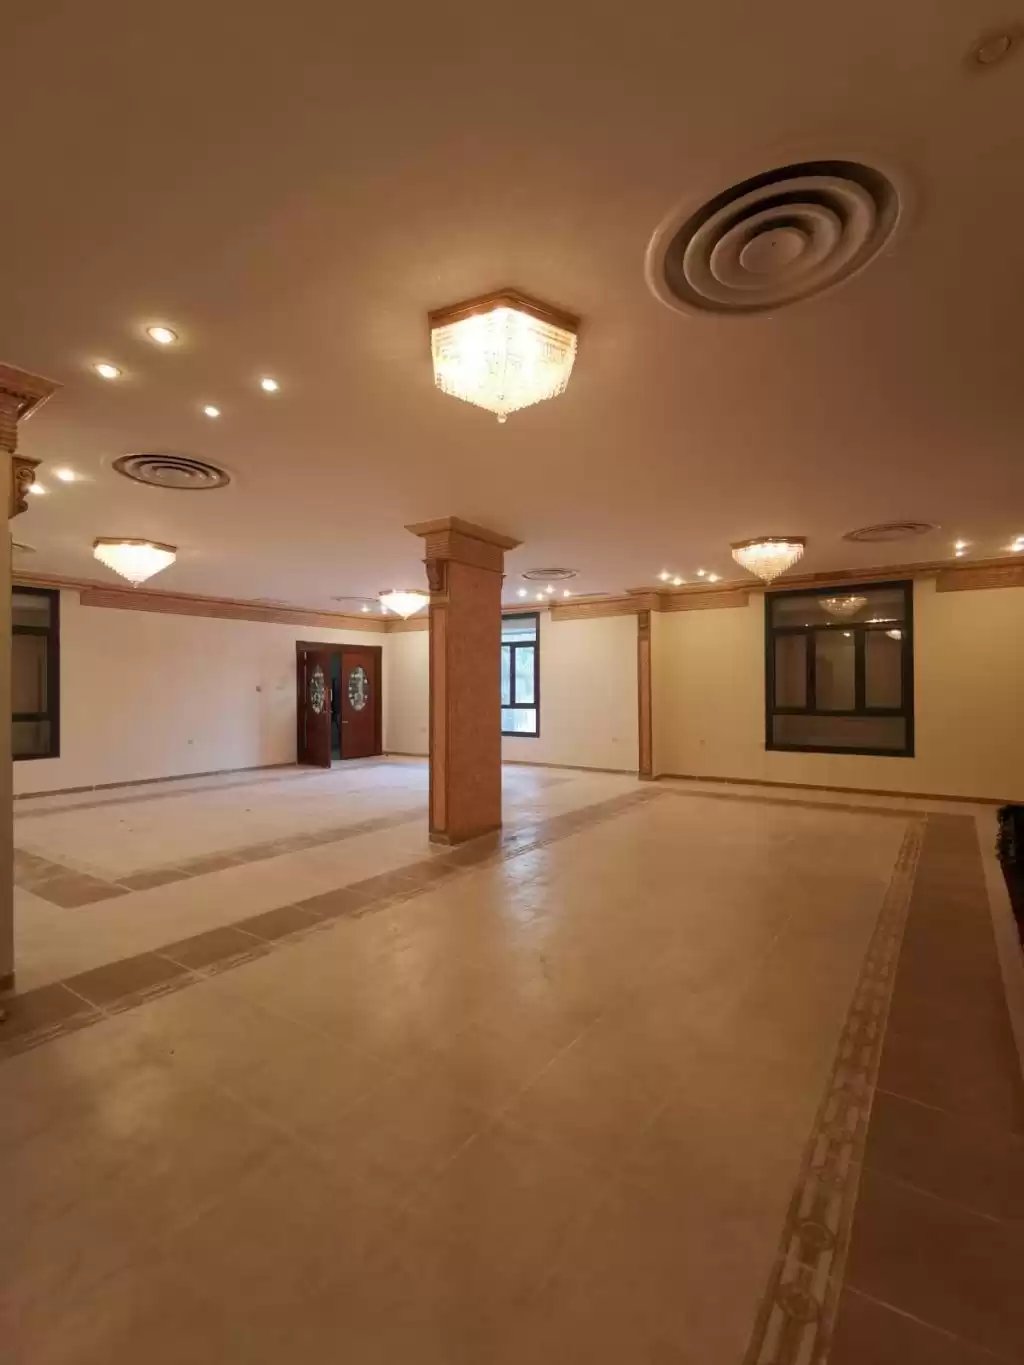 Résidentiel Propriété prête 3 chambres U / f Appartement  a louer au Koweit #23382 - 1  image 